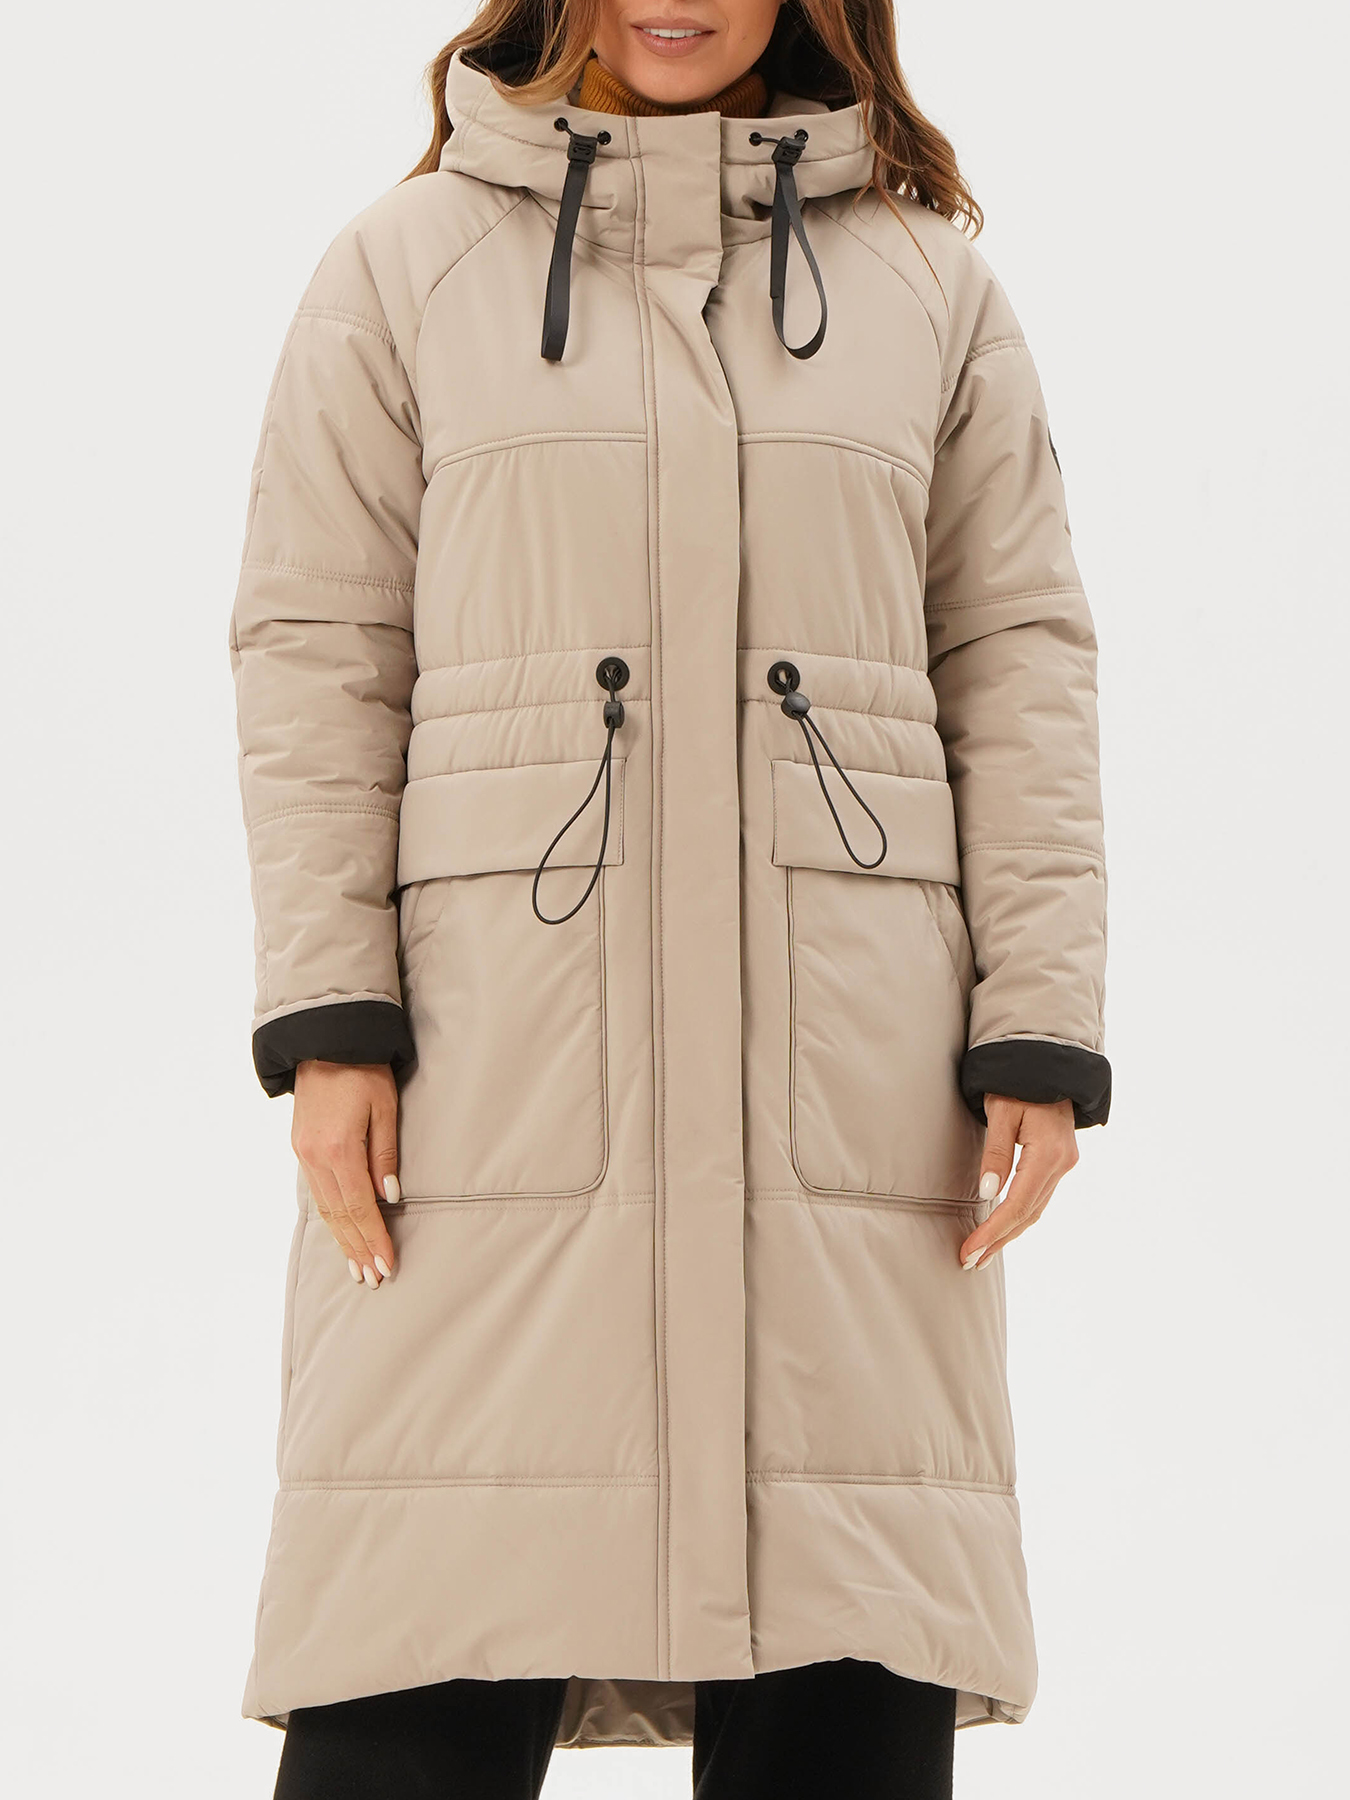 Пальто зимнее Maritta 433564-026, цвет бежевый, размер 50